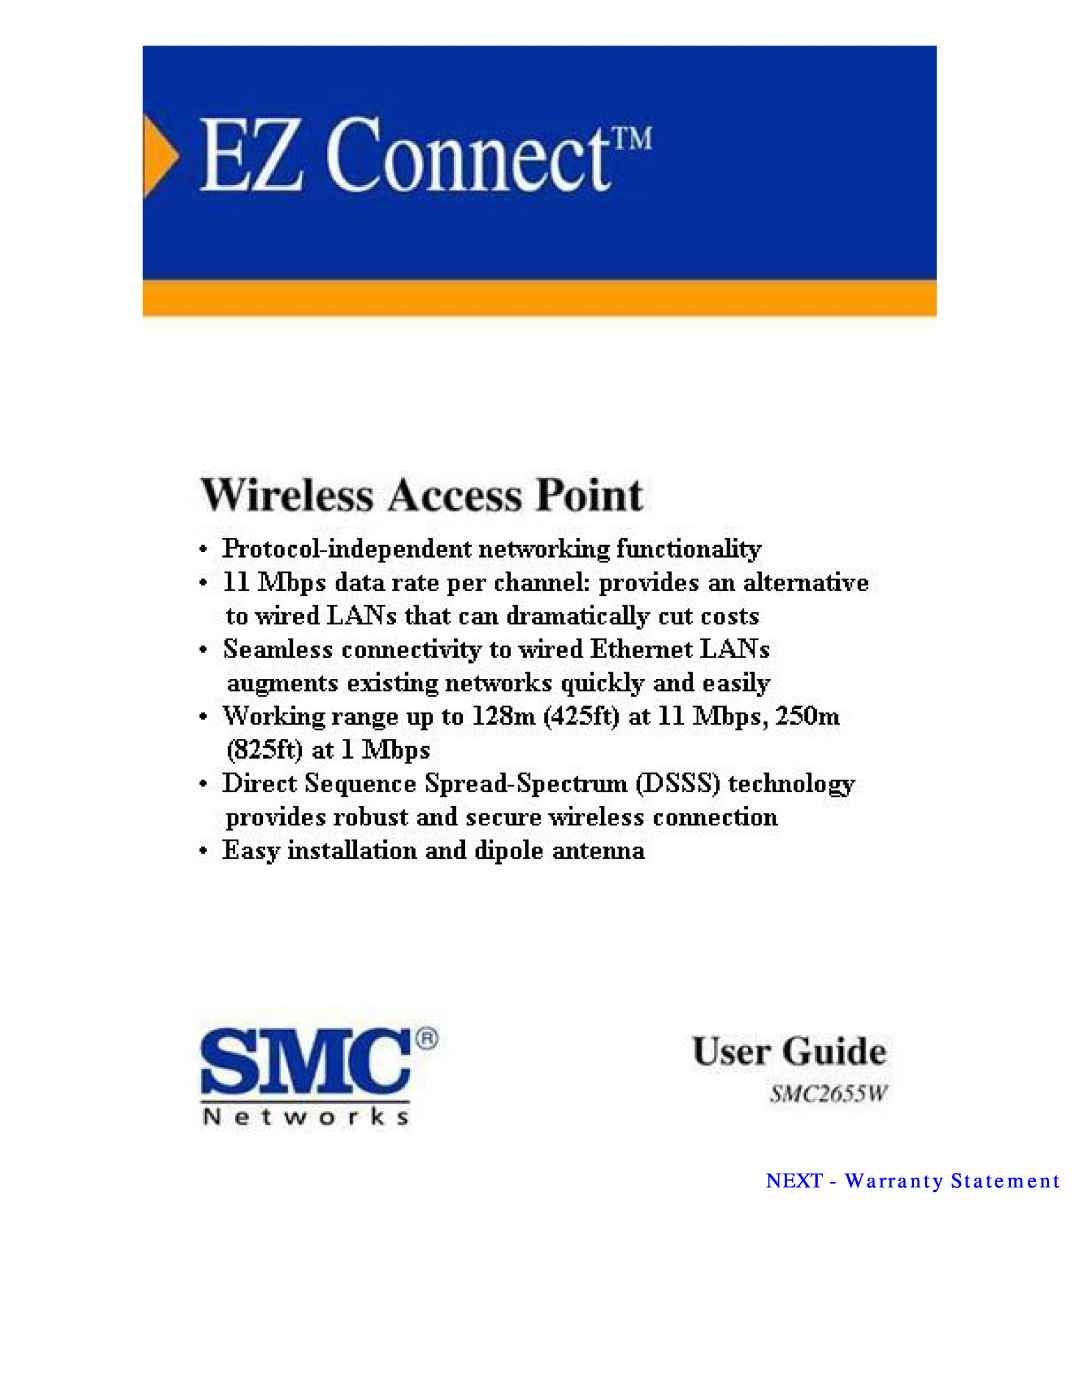 SMC Networks SMC2655W warranty NEXT - Warranty Statement 